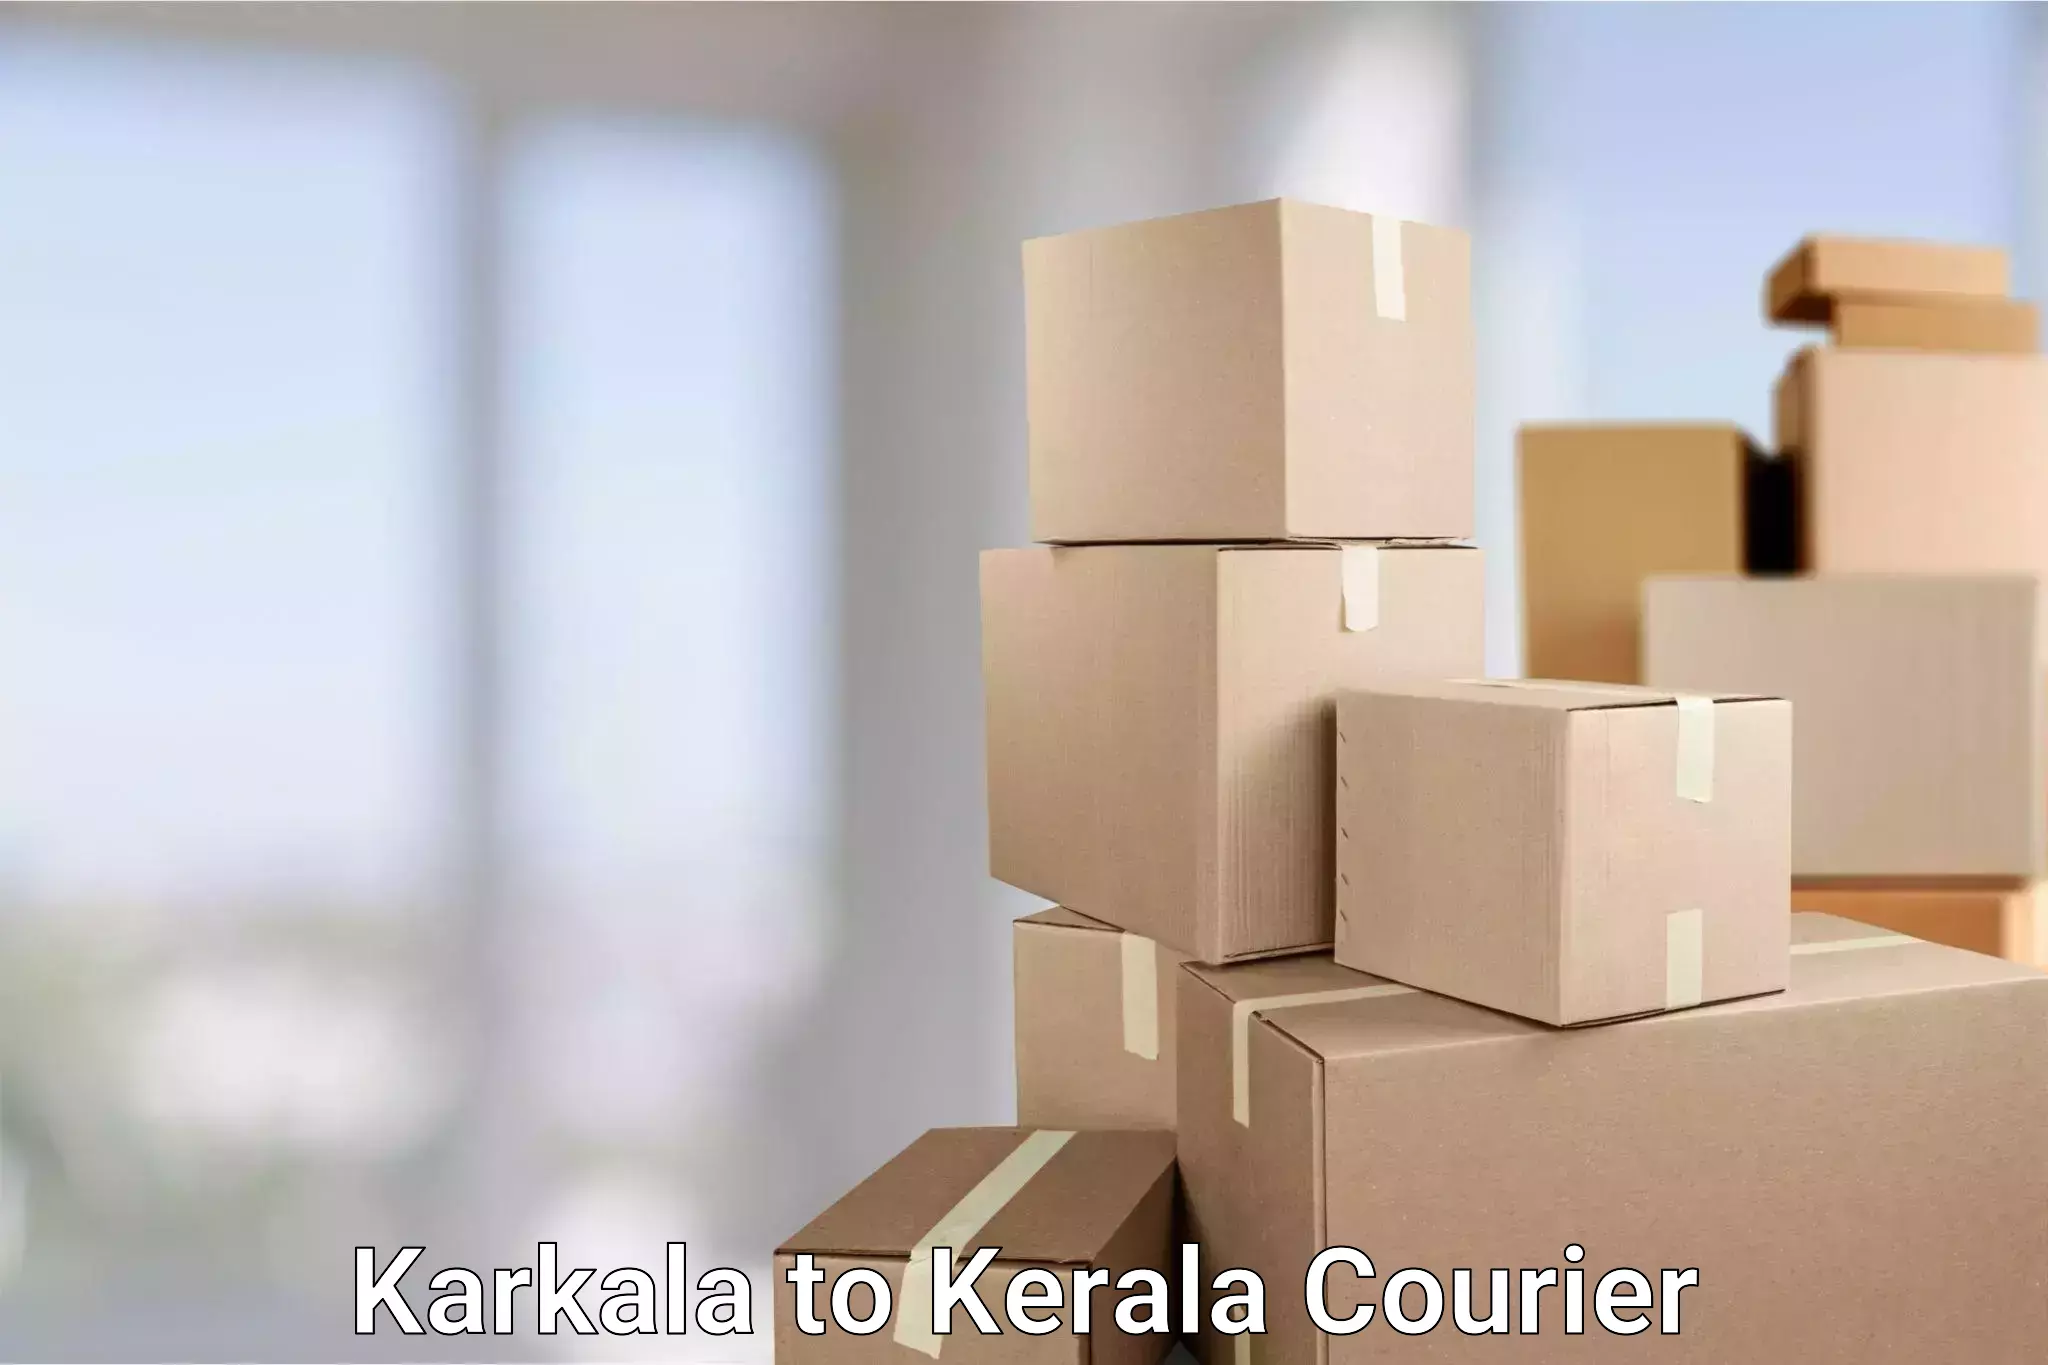 Efficient freight service Karkala to Ponekkara